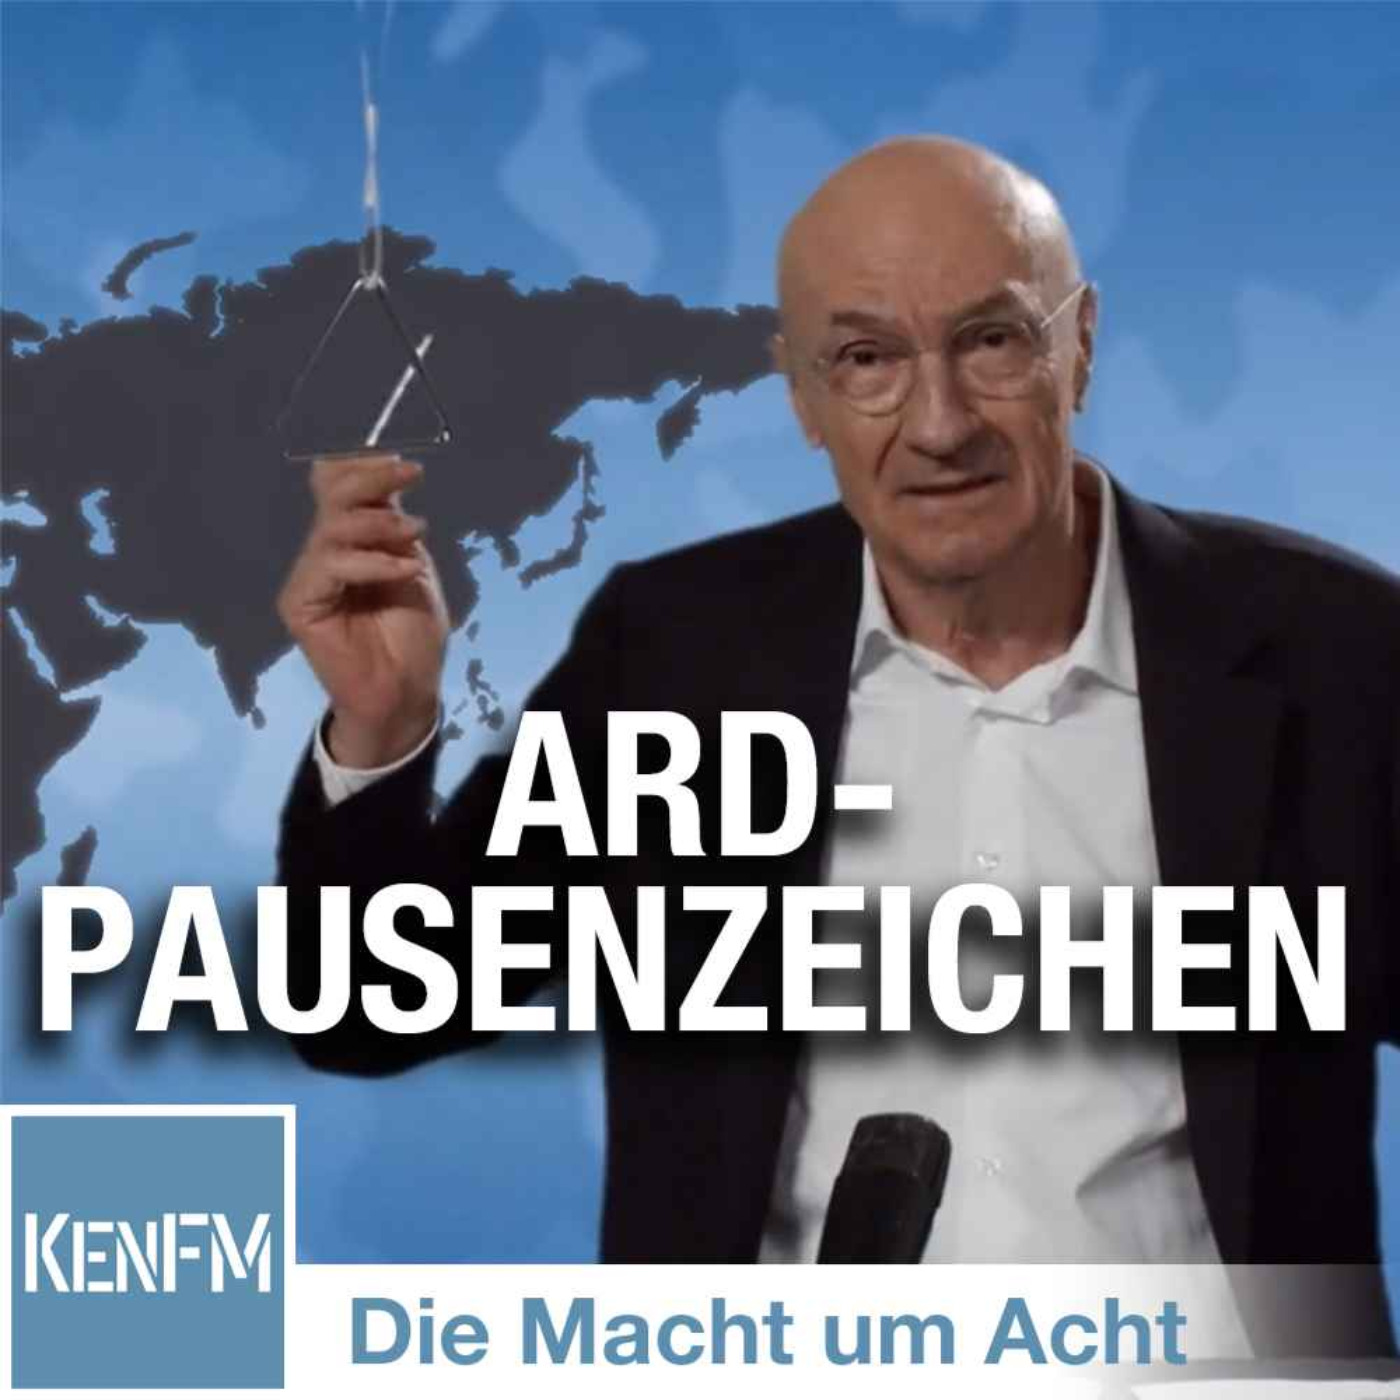 Die Macht um Acht (76) „ARD-Pausenzeichen“